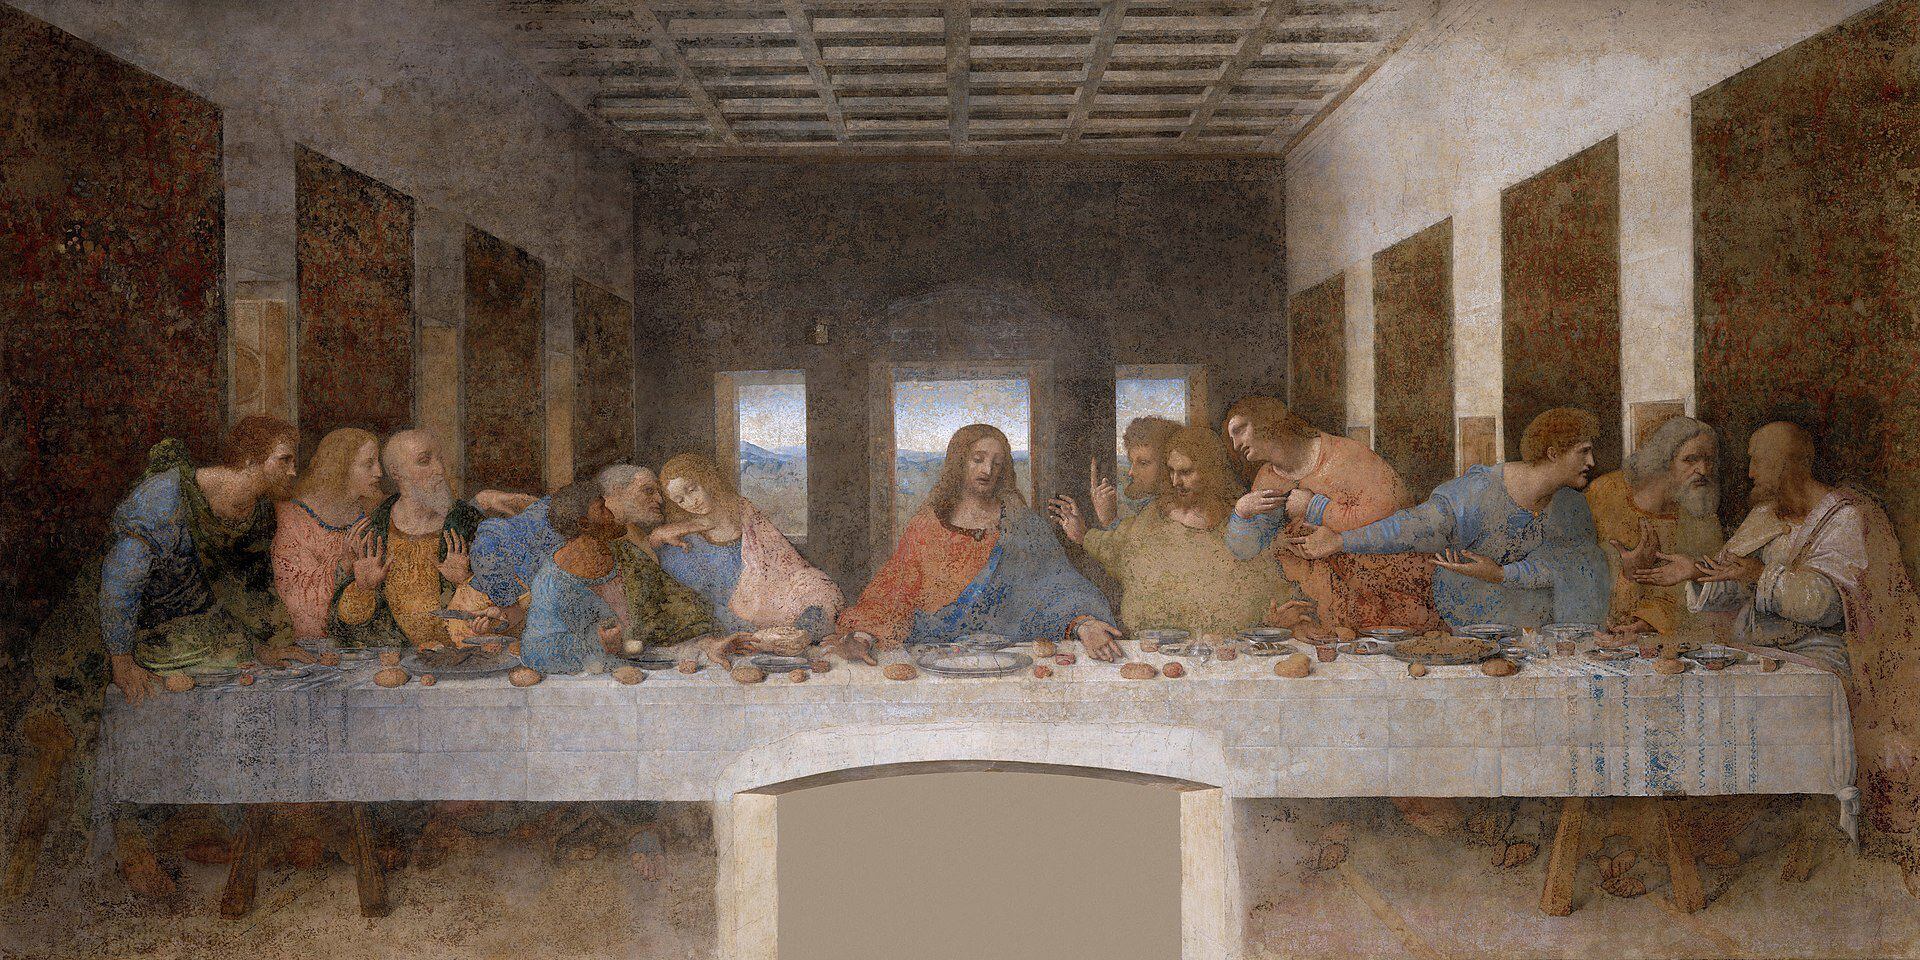 'La Última Cena', Leonardo Da Vinci fue un encargo al pintor para la iglesia dominica de Santa Maria delle Grazie, Milán. (Foto: Wikimedia Commons).